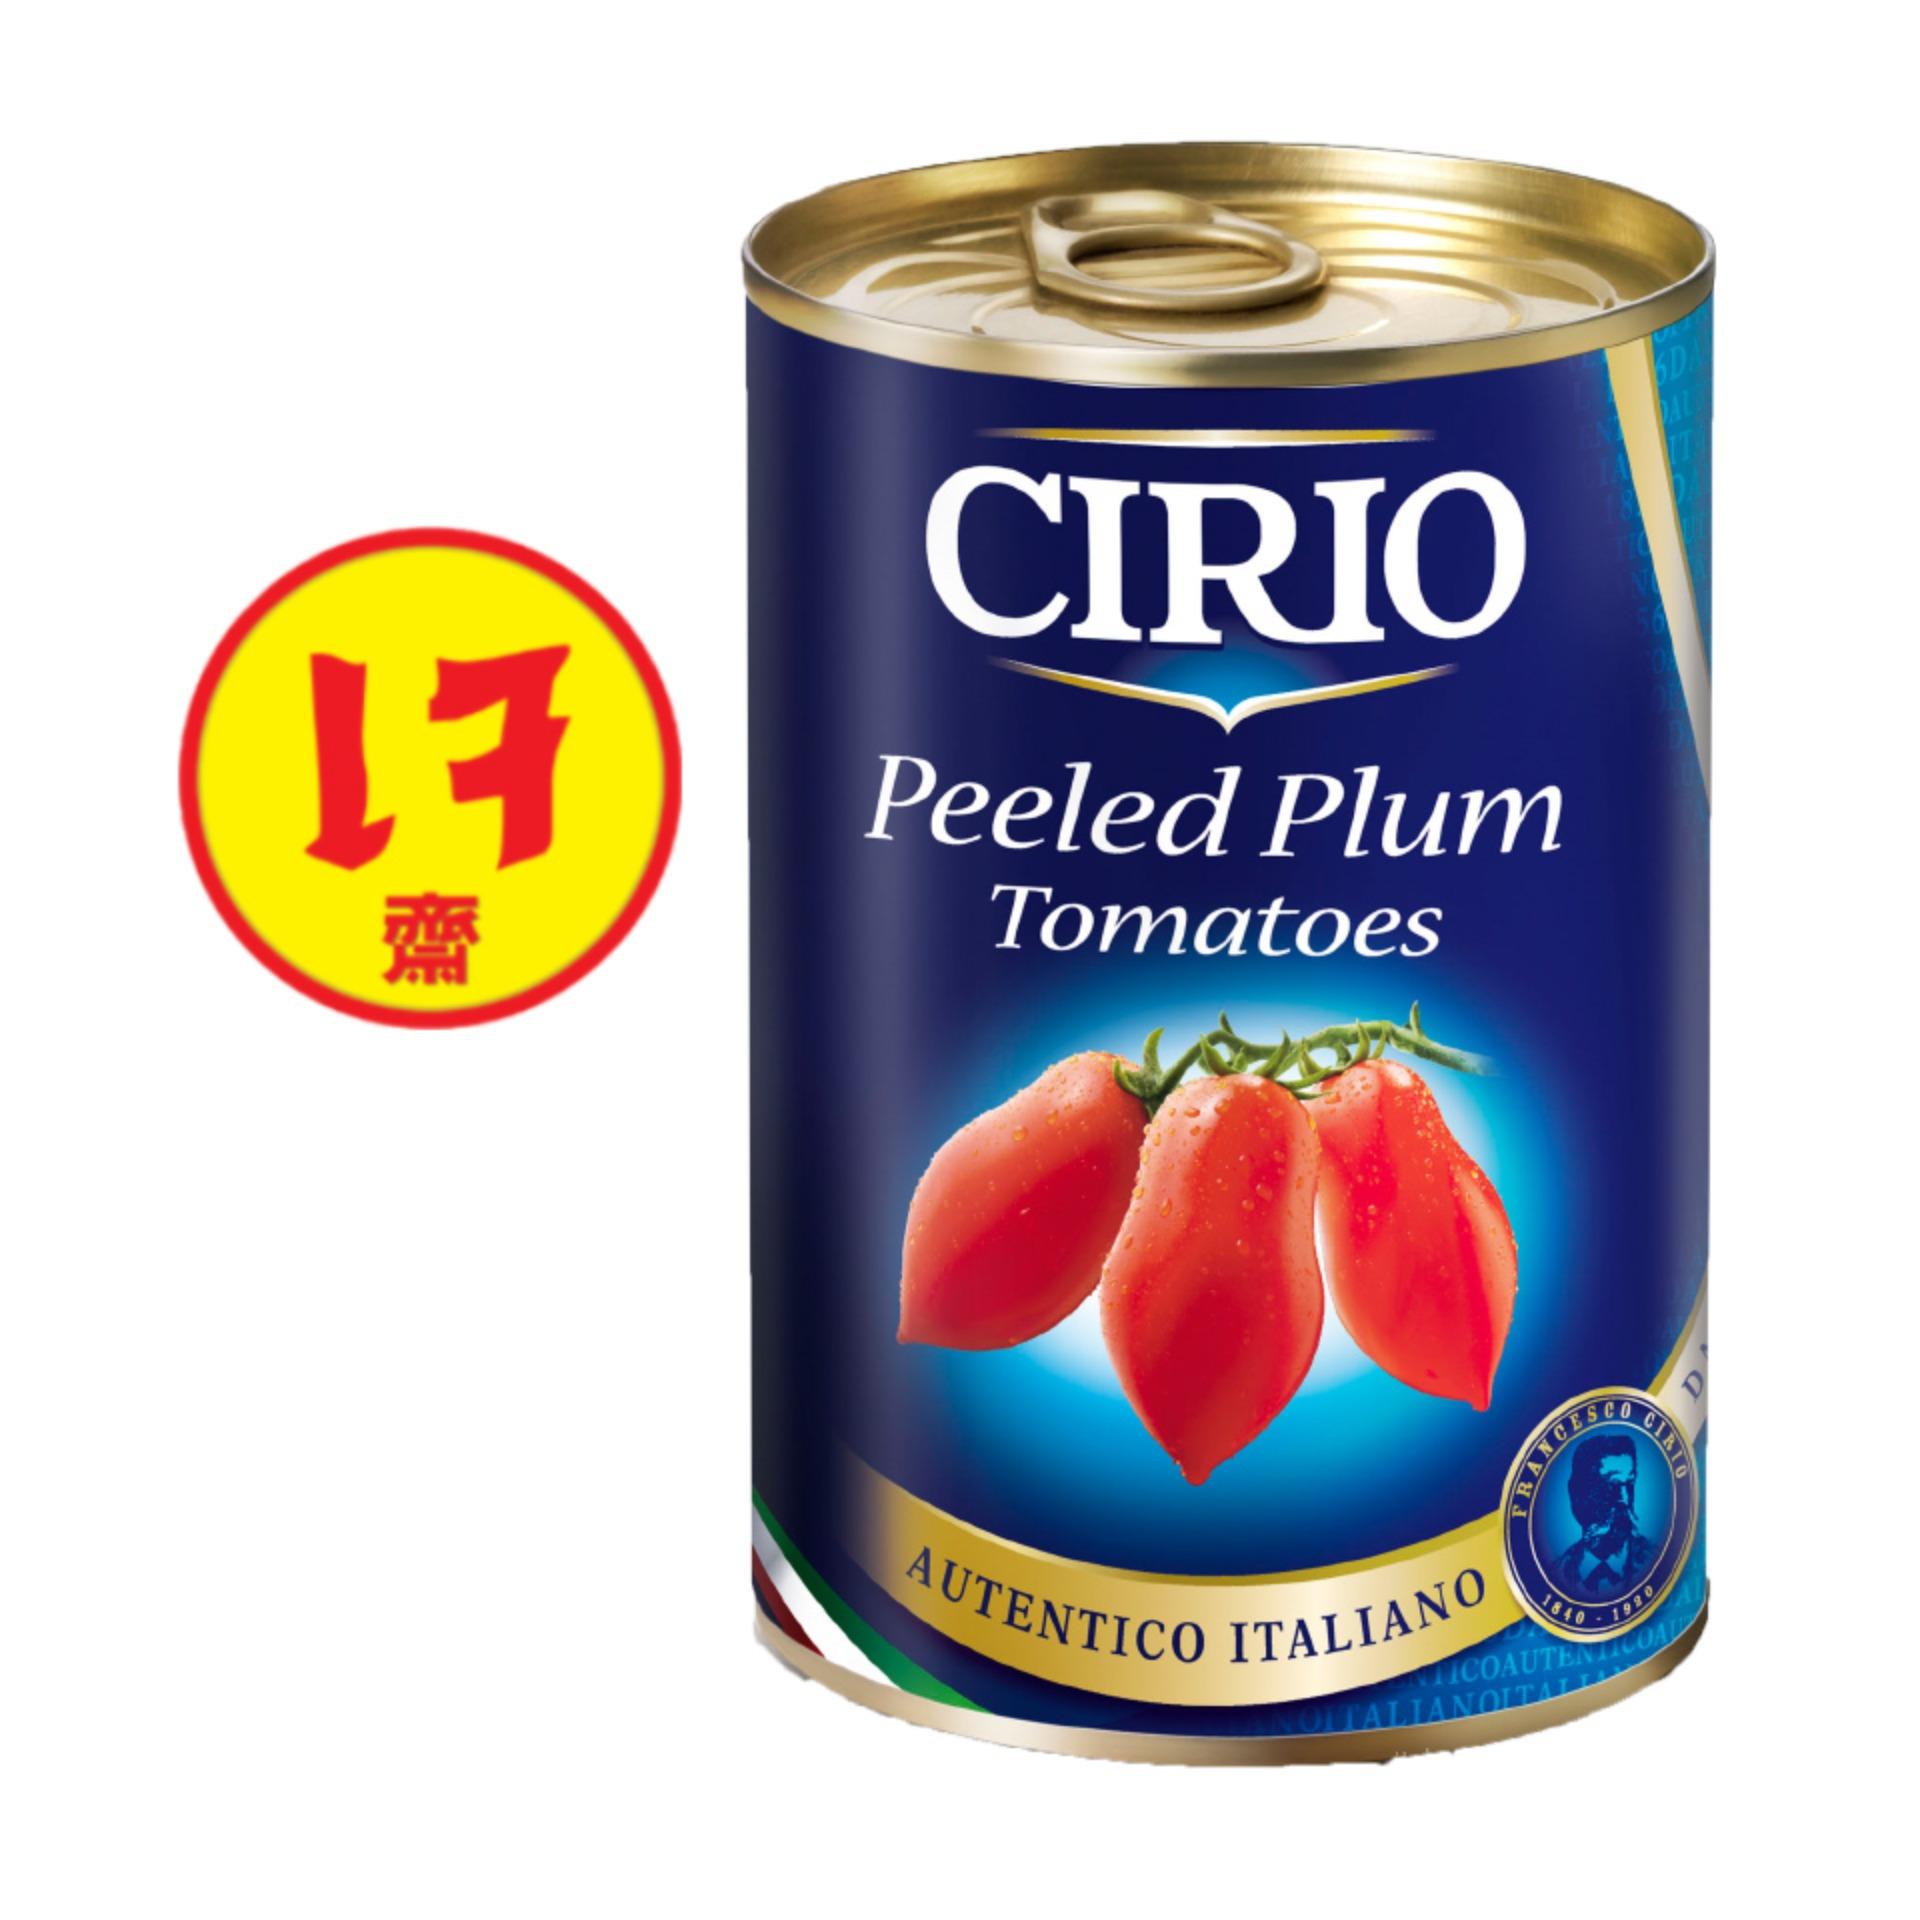 CIRIO Peeled Tomatoes 400 gm. มะเขือเทศพลัมสายพันธุ์อิตาลี 100% แบบปอกเปลือก บรรจุกระป๋อง นำเข้าจากประเทศอิตาลี ขนาด 400 กรัม